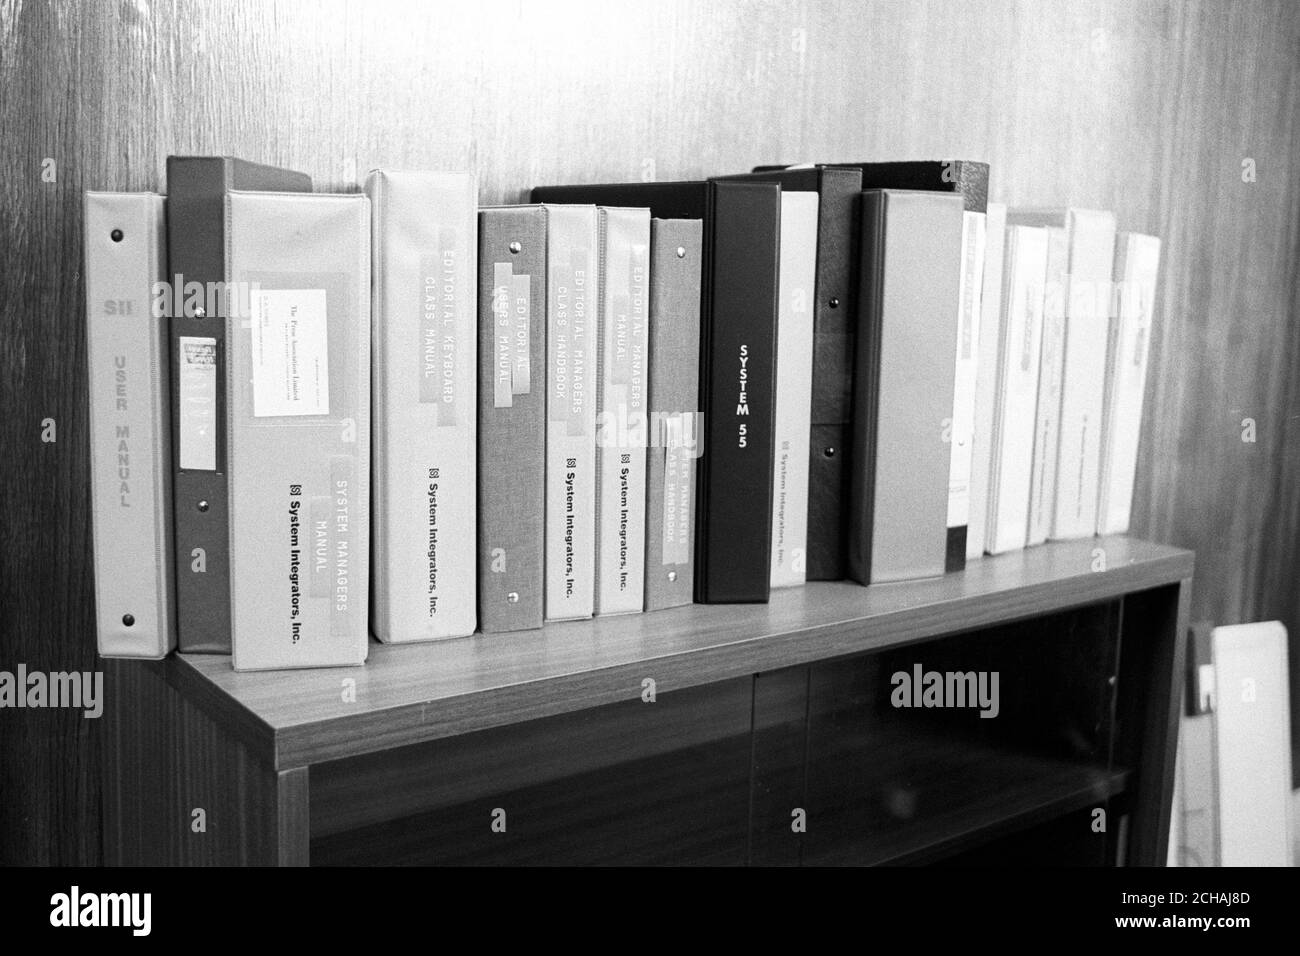 Certains des manuels de l'ordinateur '11' doivent être installés au sein de la Press Association. Banque D'Images